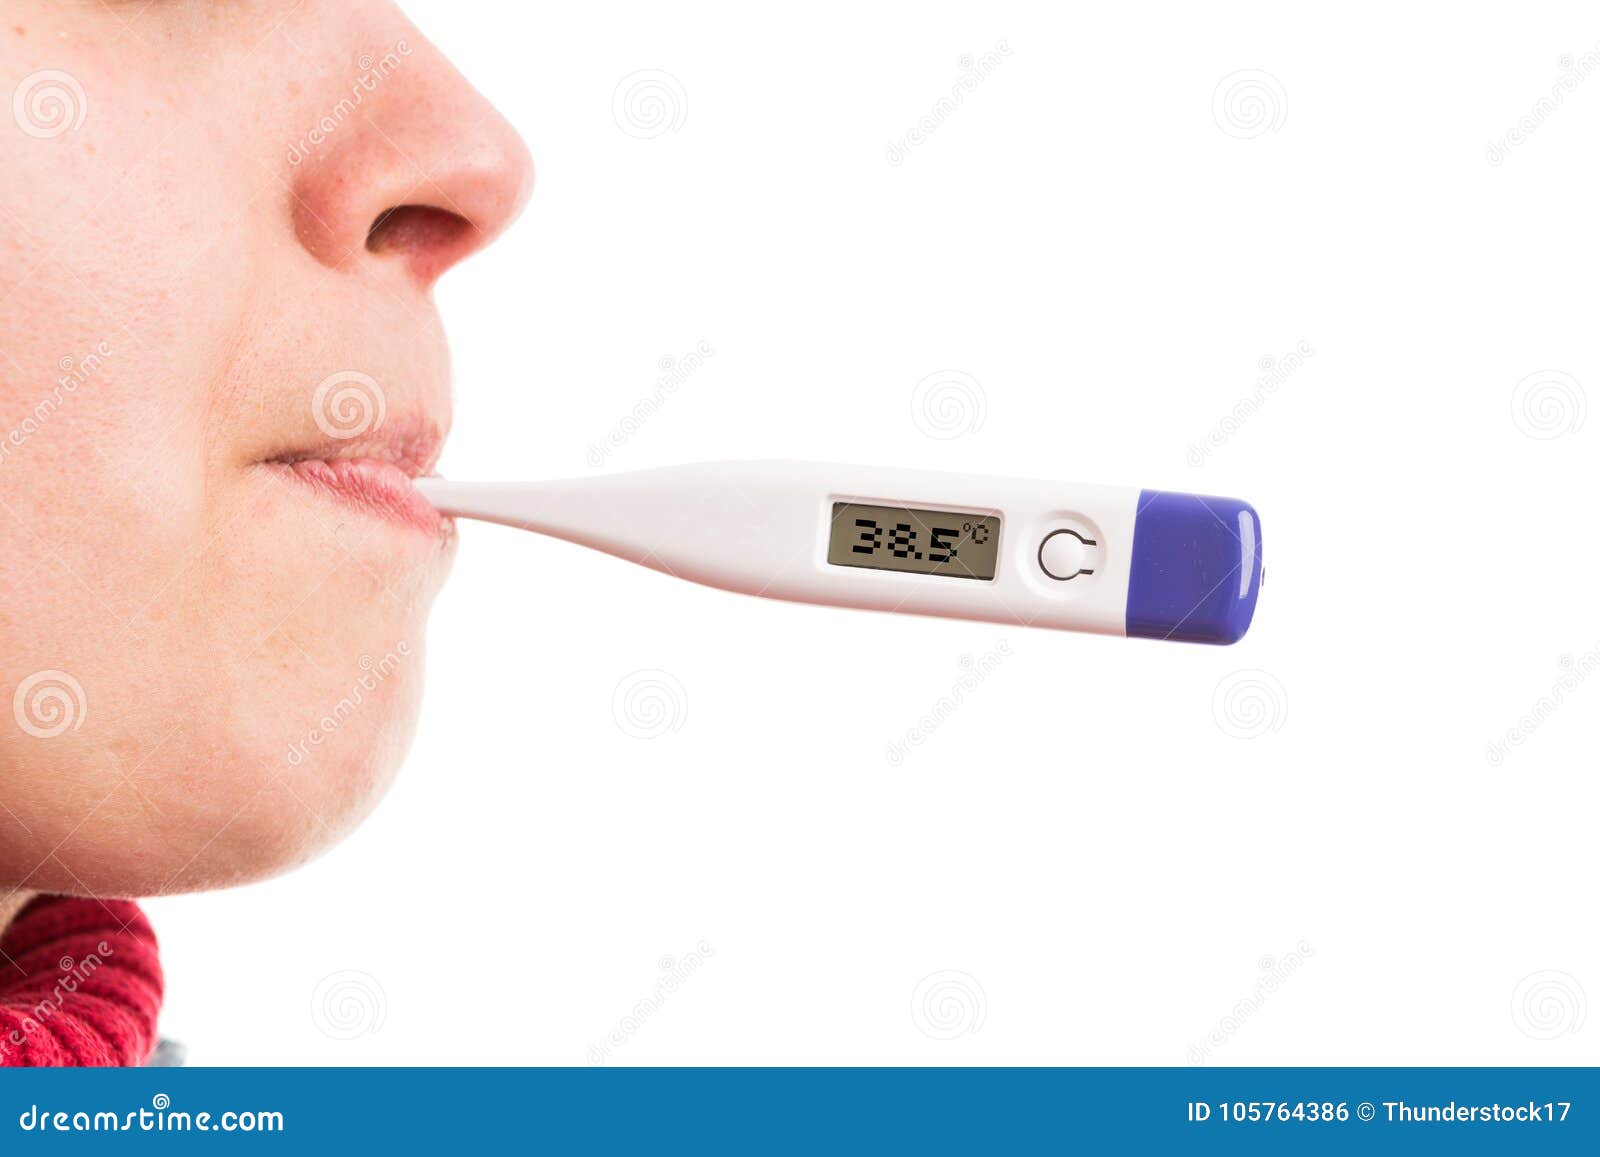 Повышенная температура во рту